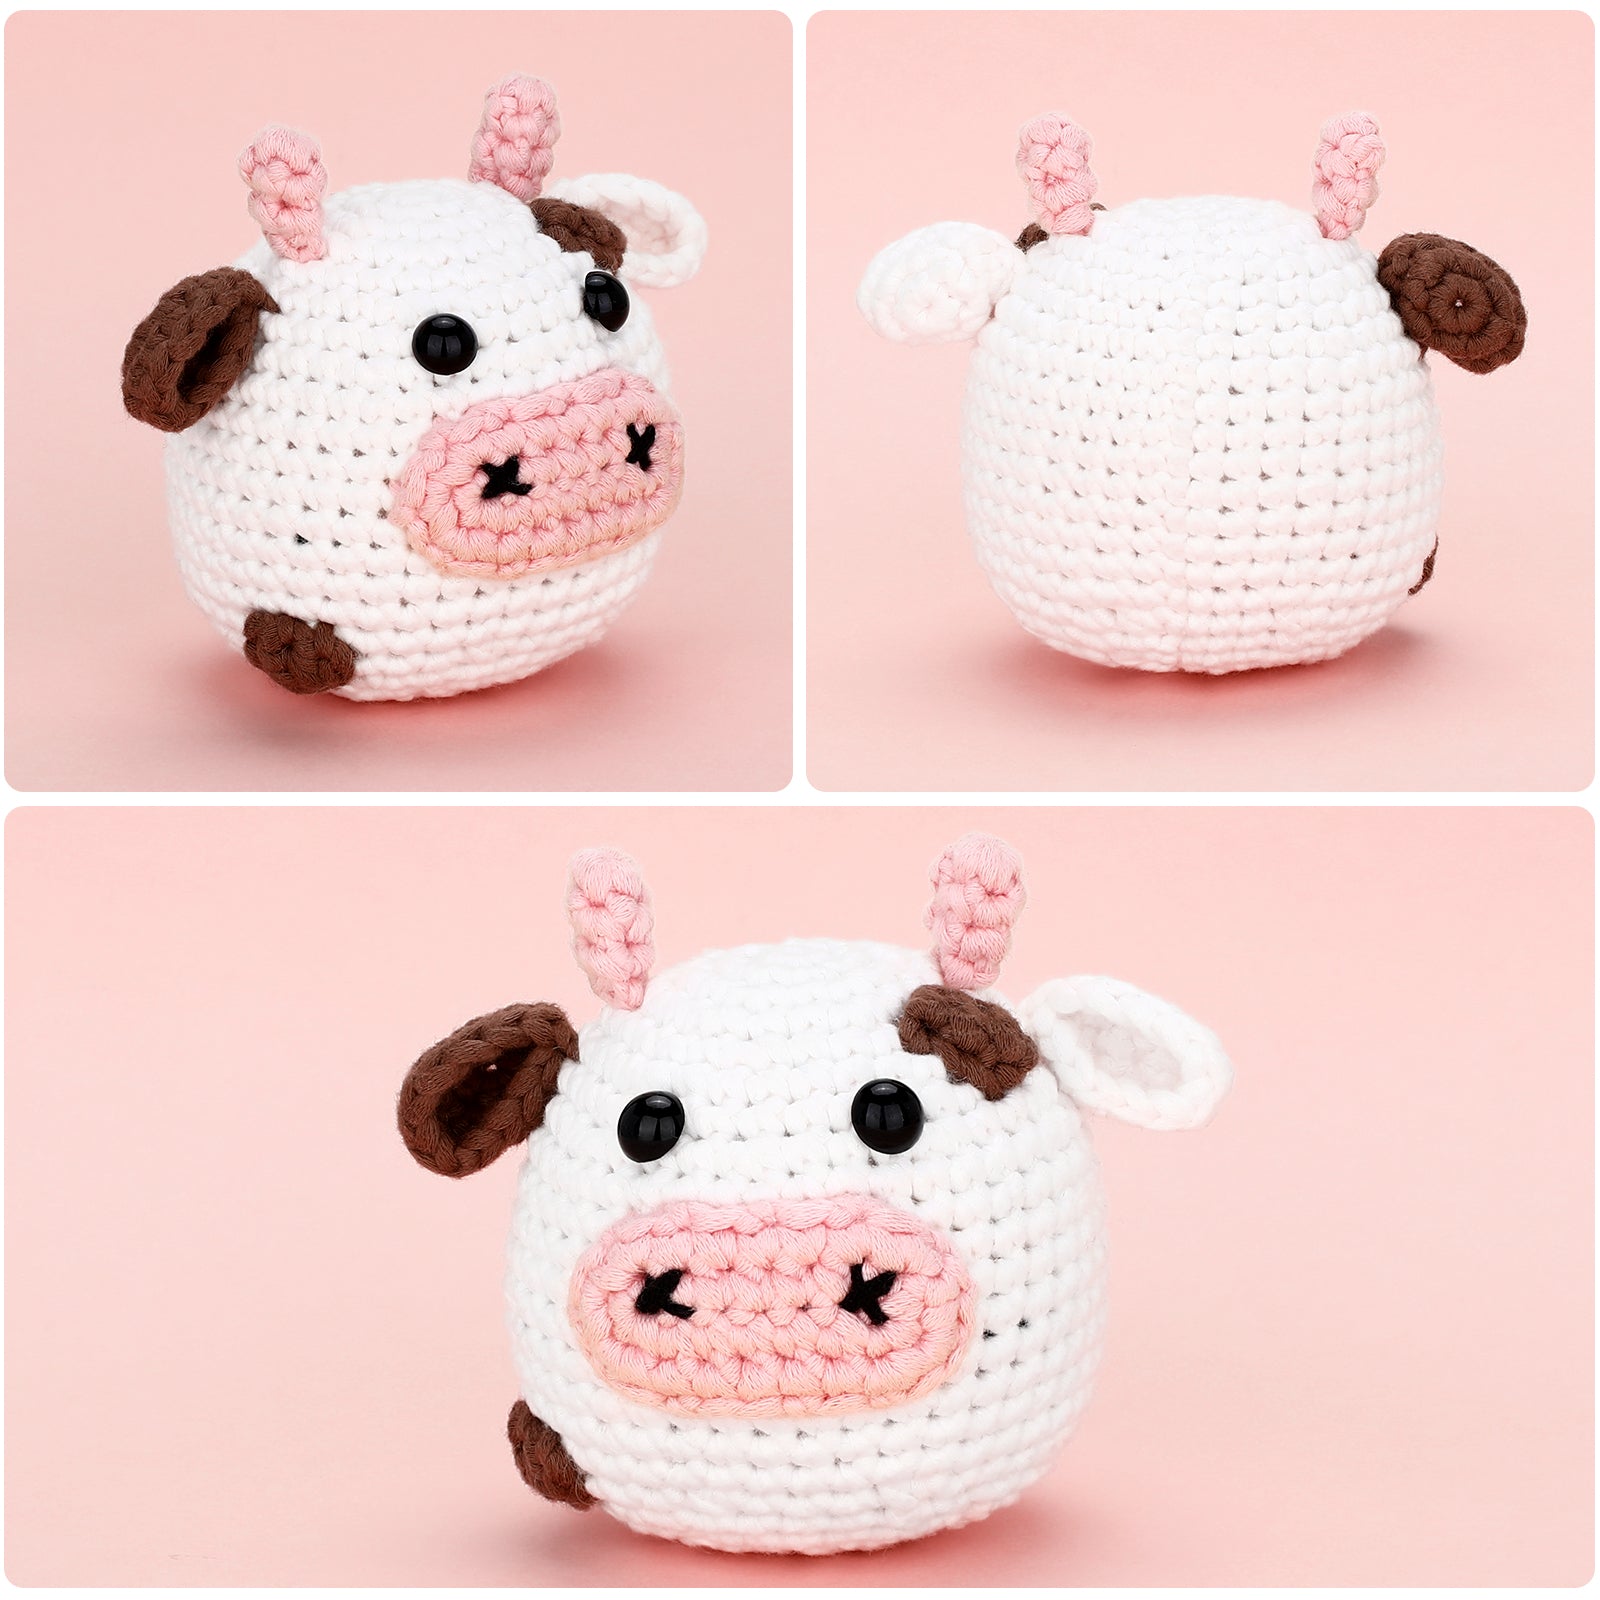 COW CROCHET KIT – My crochet kit